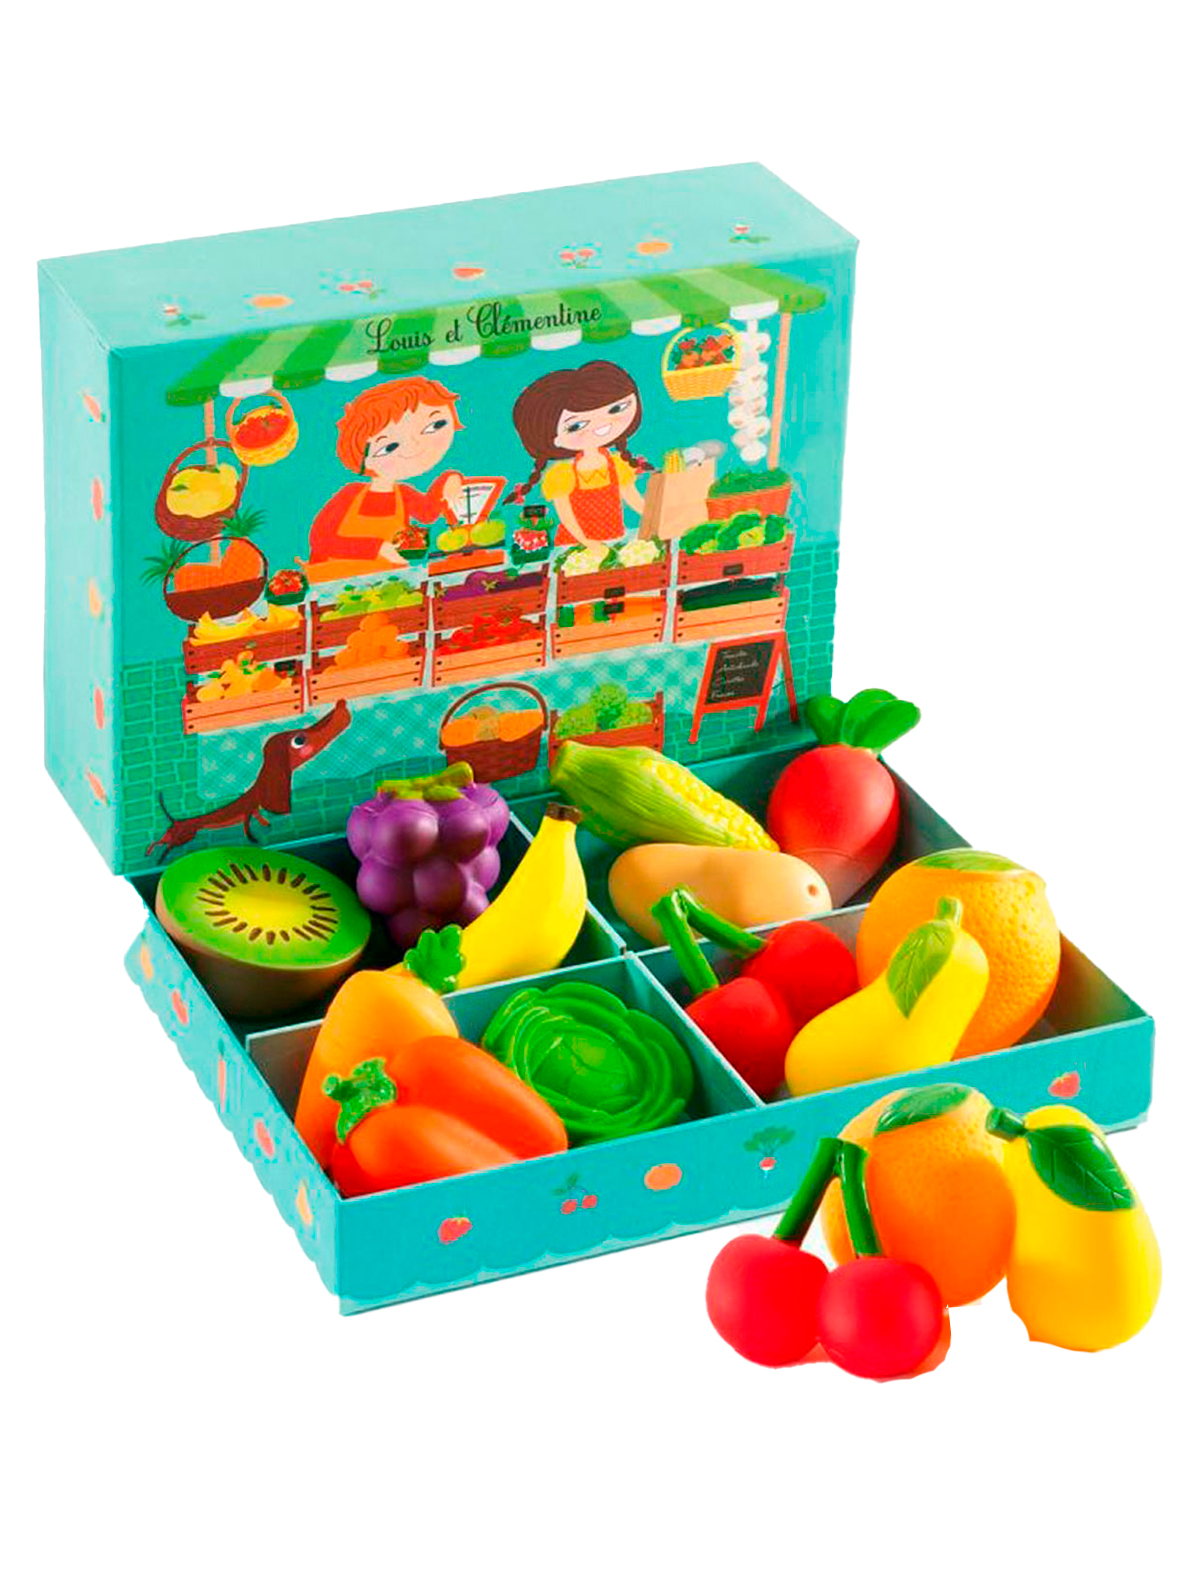 Комплект развивающих игр. Набор продуктов Djeco овощная Лавка 06621. Джеко набор барбекю. Набор игр Джеко. Набор овощей и фруктов для детей.